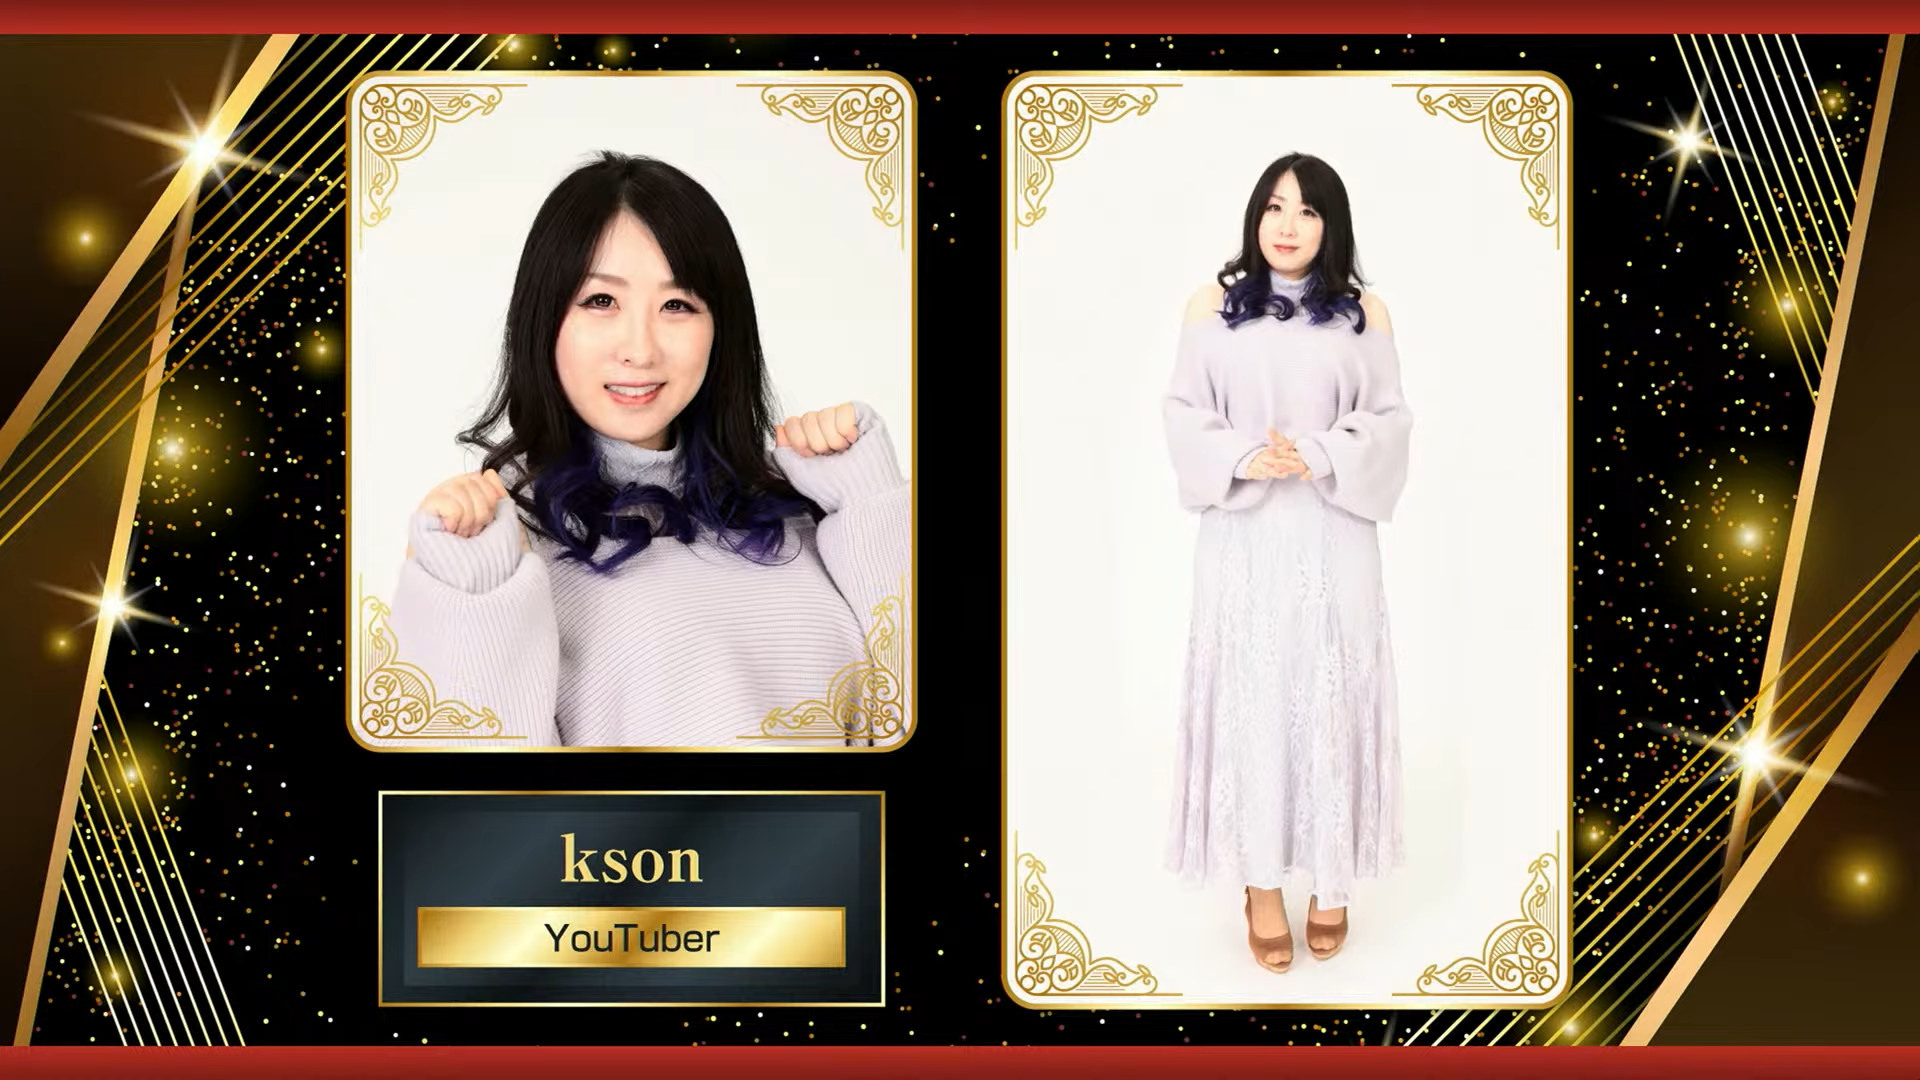 《人中之龙》公布真人酒店小姐选拔活动最终获选者名单 YouTuber “总长” Kson 名列其中插图6